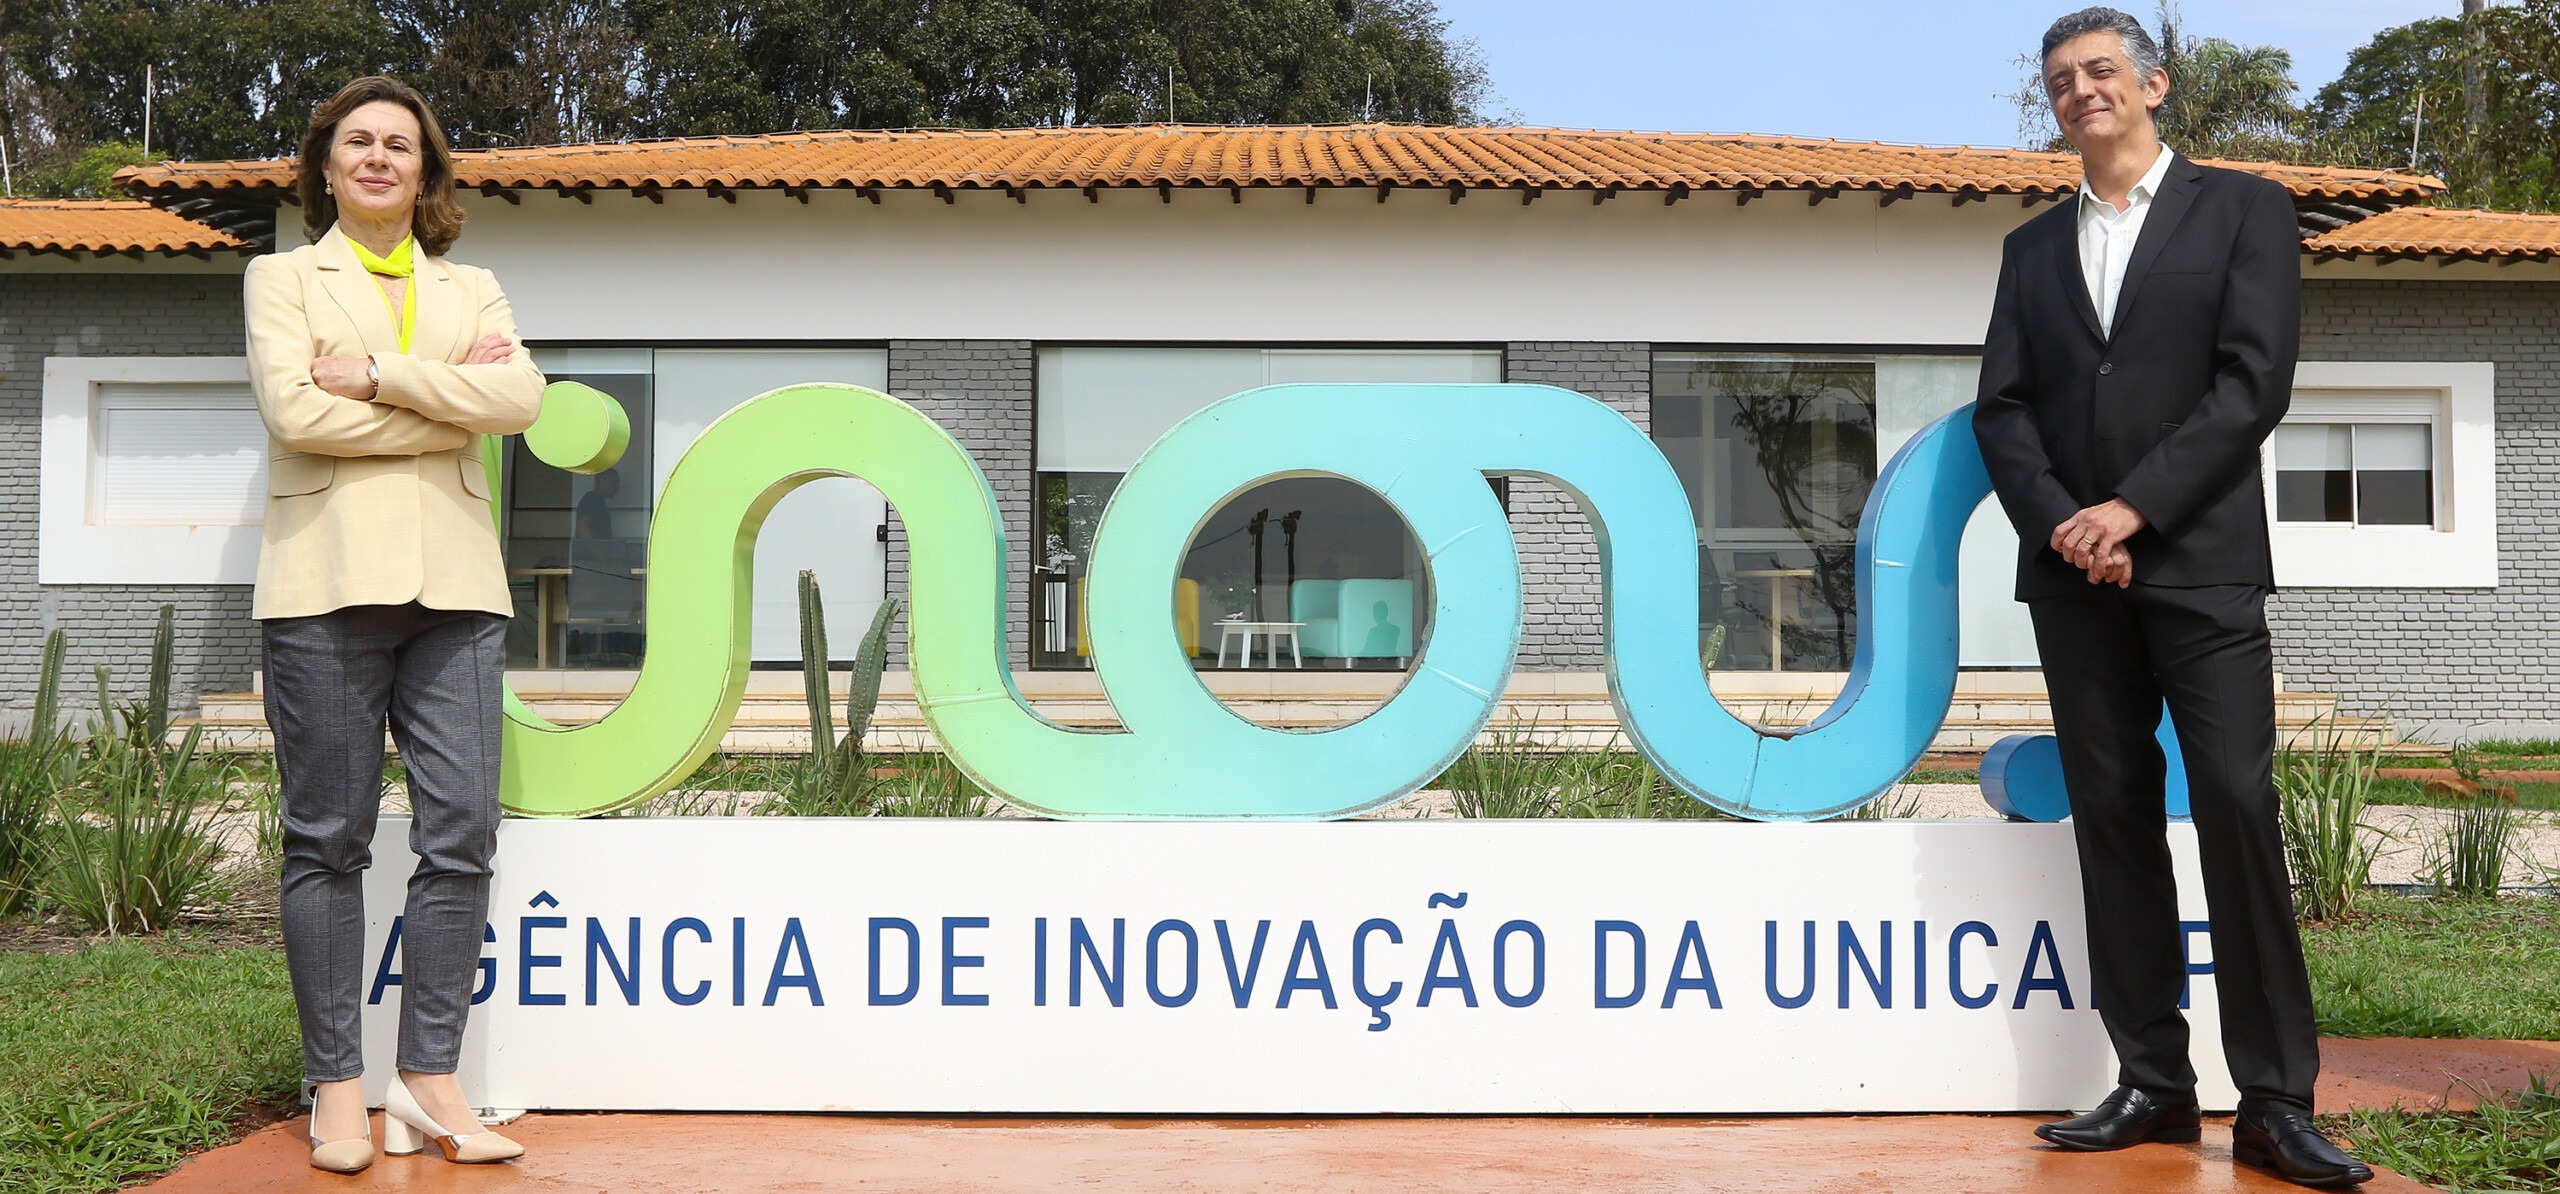 Foto do logo da Inova Unicamp com a professora Ana Frattini e o professor Renato Lopes nas pontas